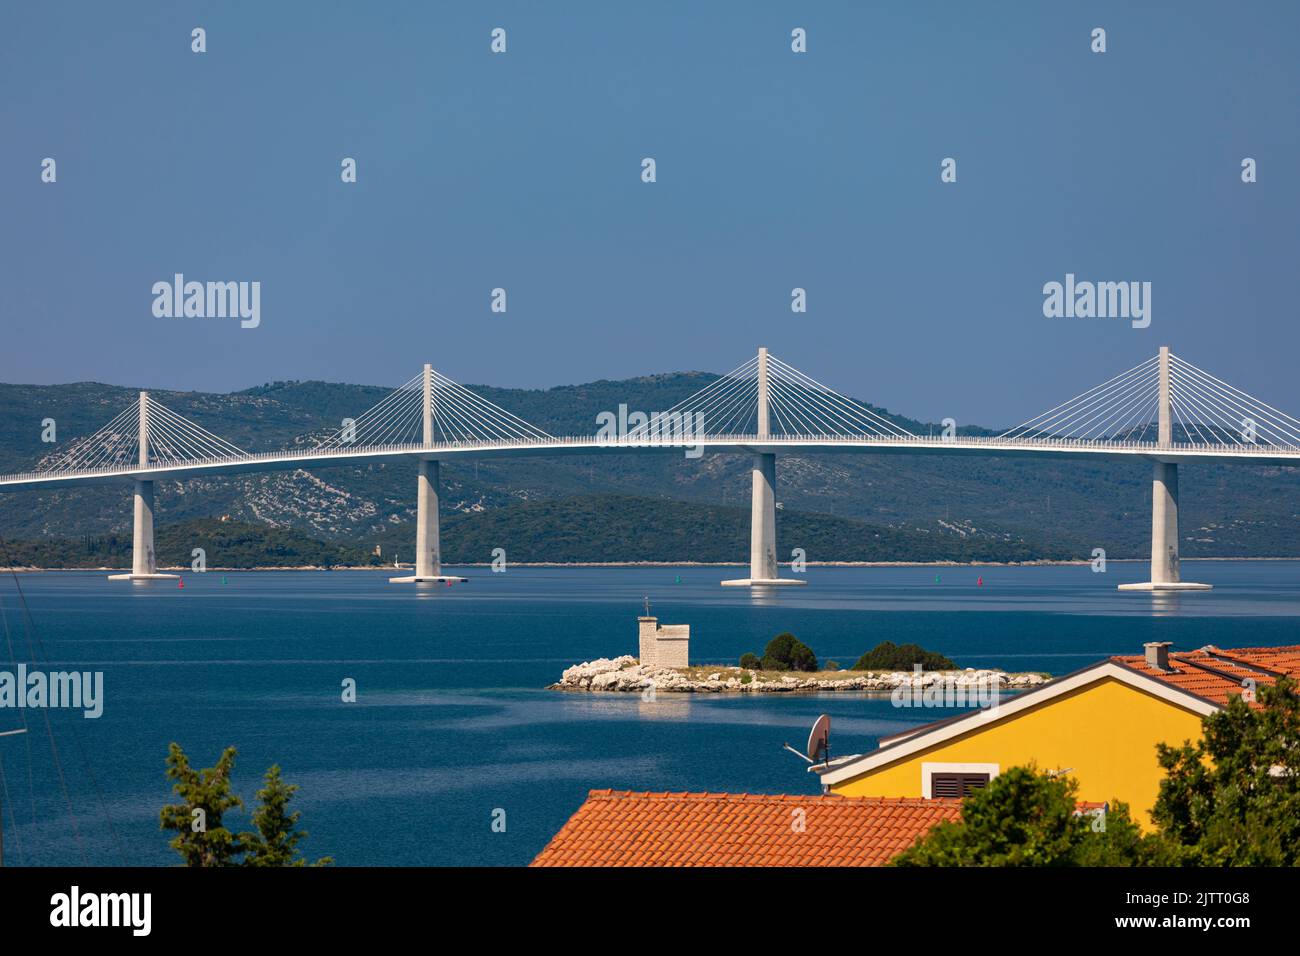 GESPANSCHAFT DUBROVNIK-NERETVA, KROATIEN, EUROPA - die Peljesac-Brücke, die Bucht von Mali Ston überquert und Kroatien verbindet und Bosnien und Herzogovina umgeht. Stockfoto